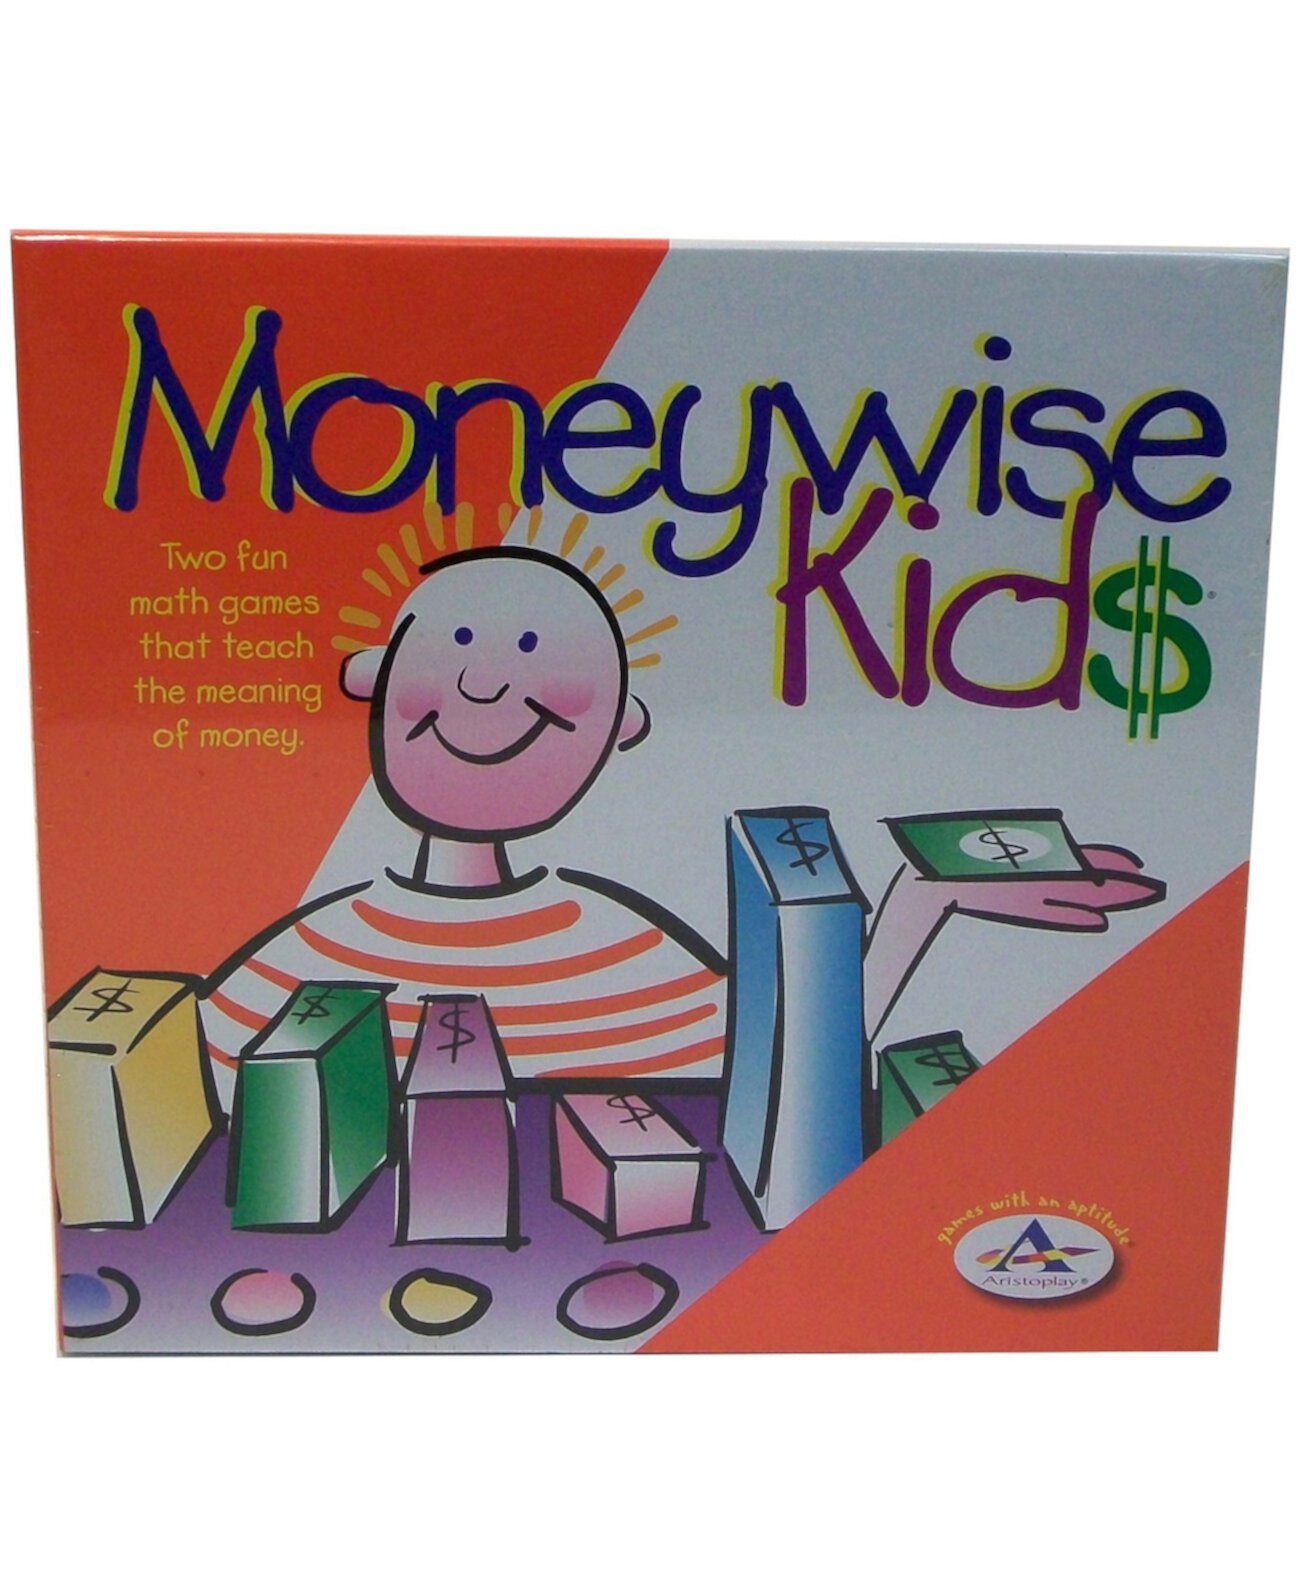 Moneywise Kids Game Aristoplay